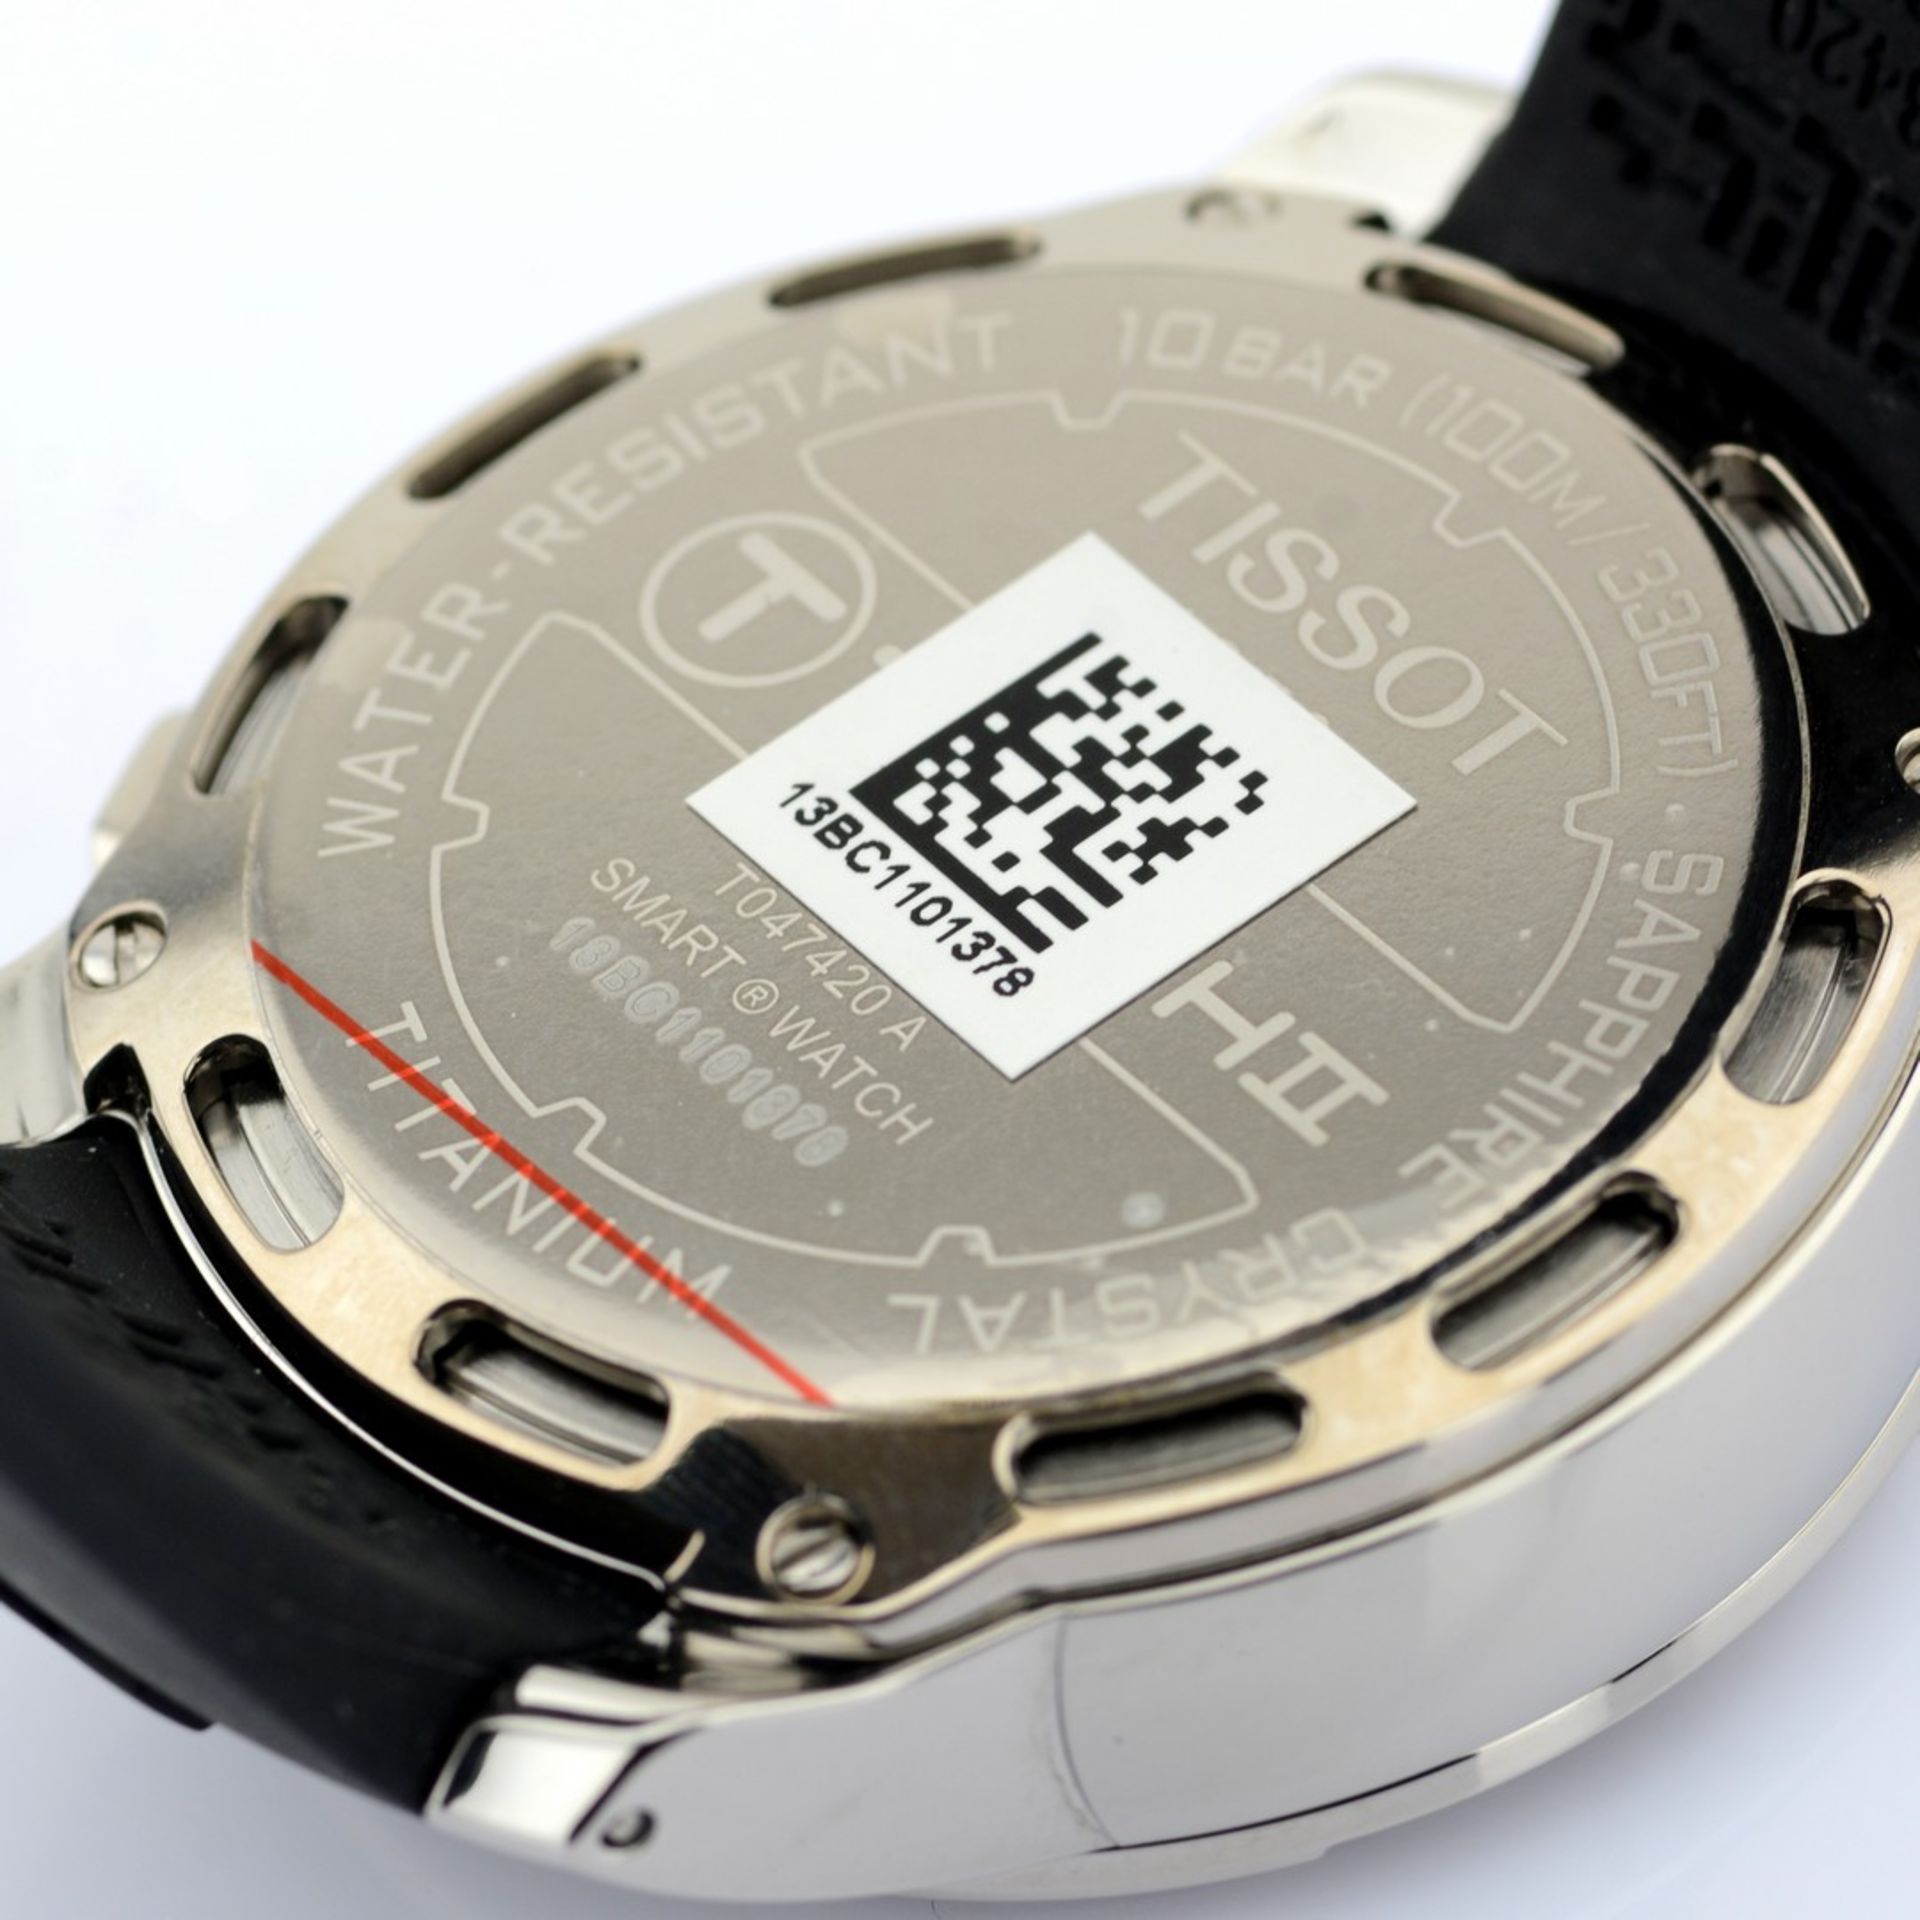 Tissot / T-Touch II Smart (New) - Gentlmen's Steel Wrist Watch - Image 11 of 12